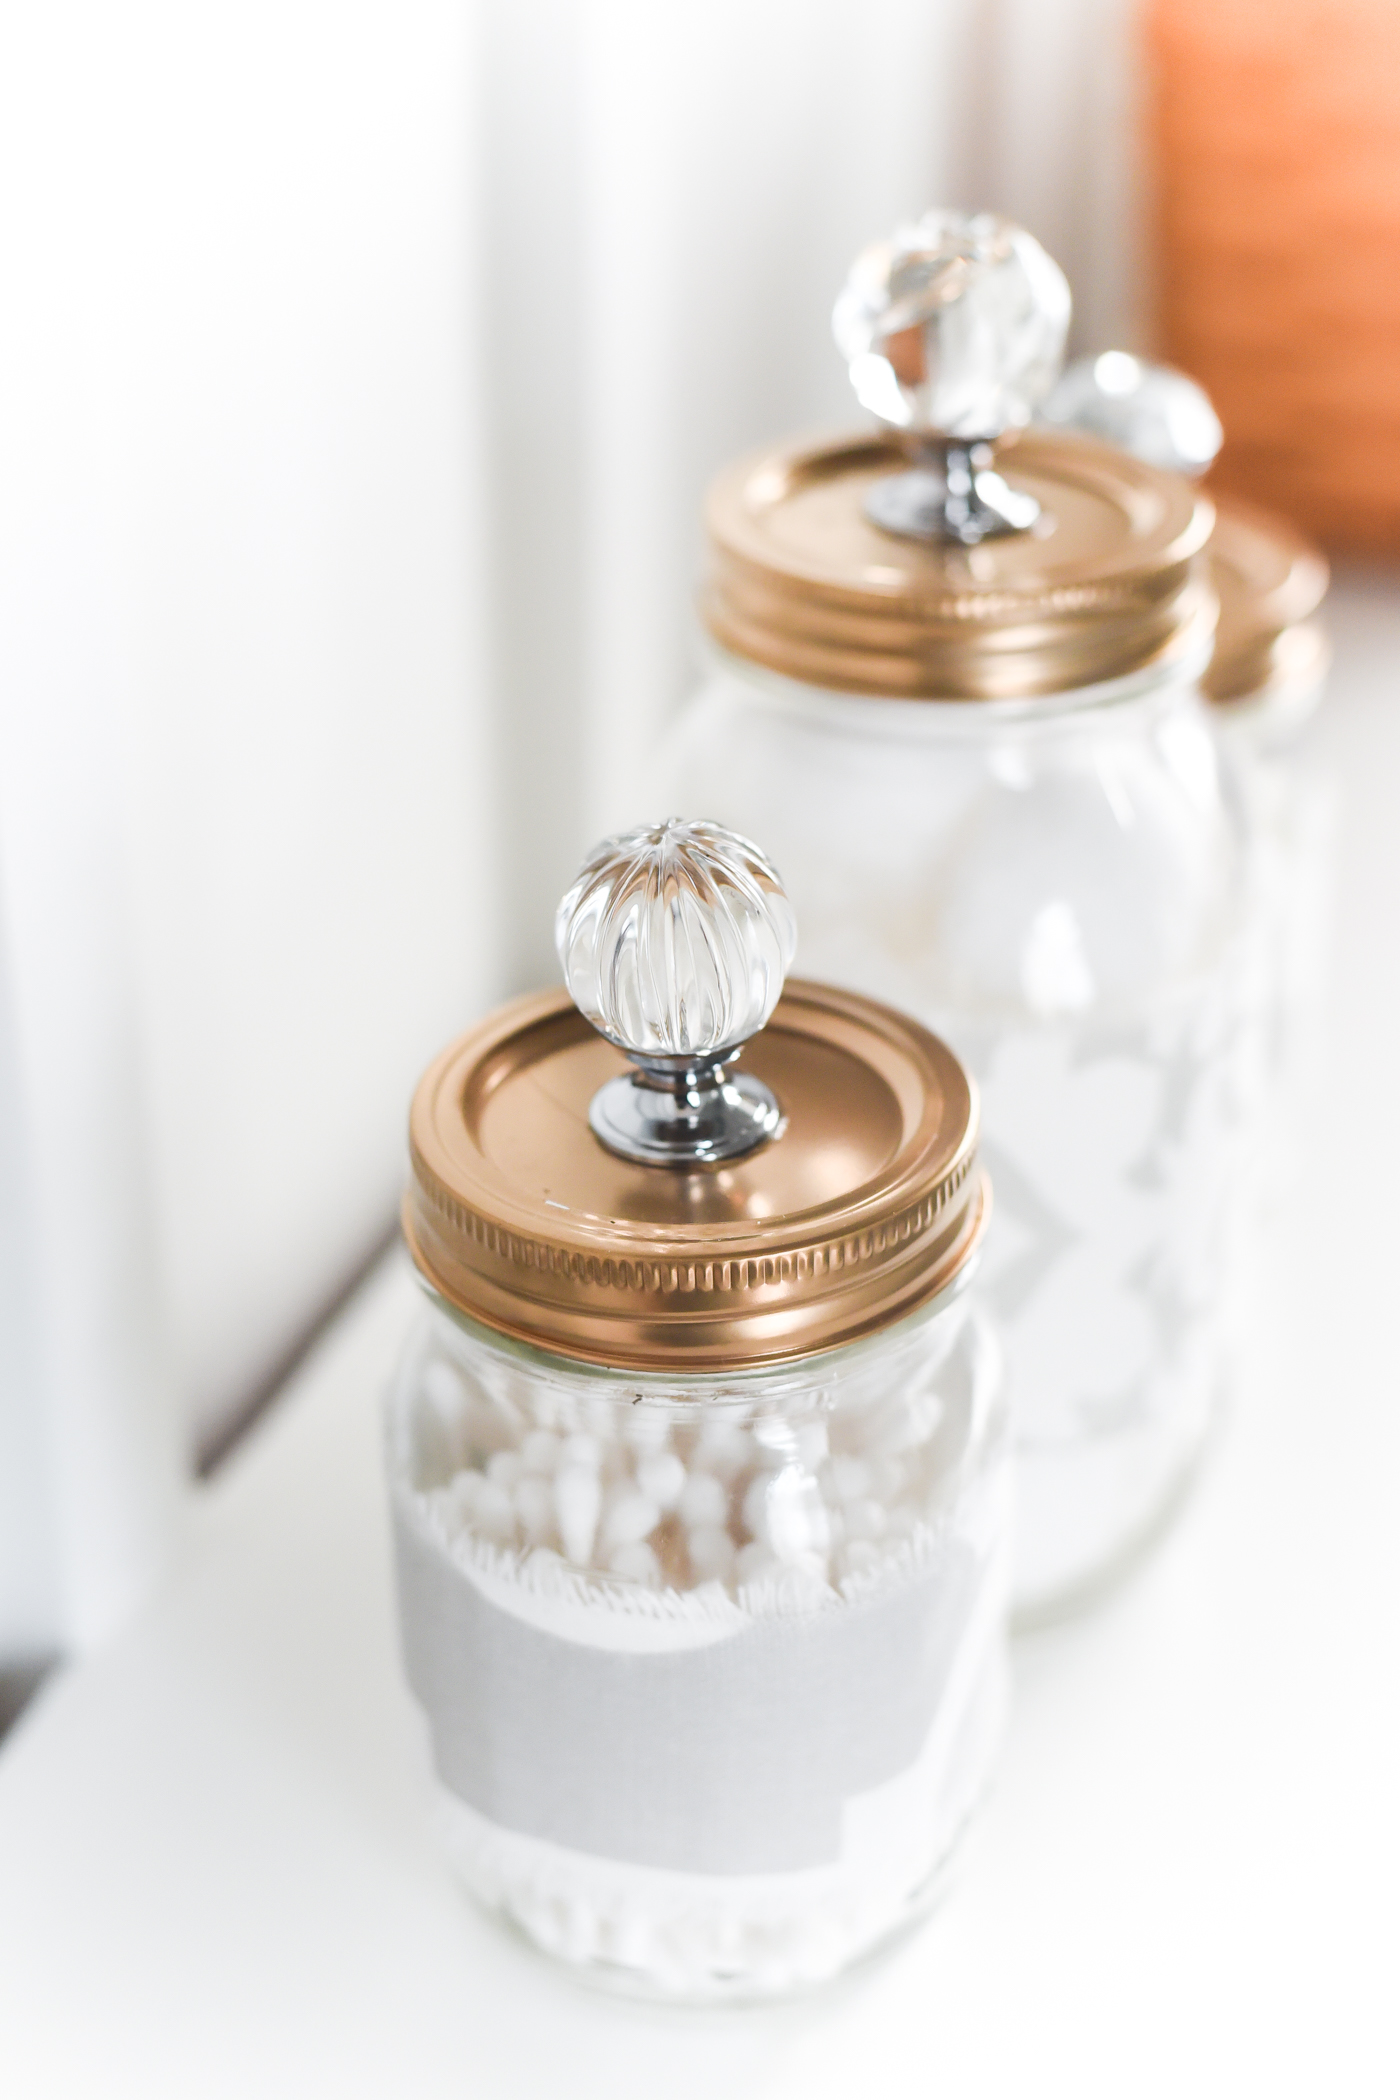 Mason Jar Gold Lids with Crystal Glass Knobs - Mason Jar Bathroom Storage